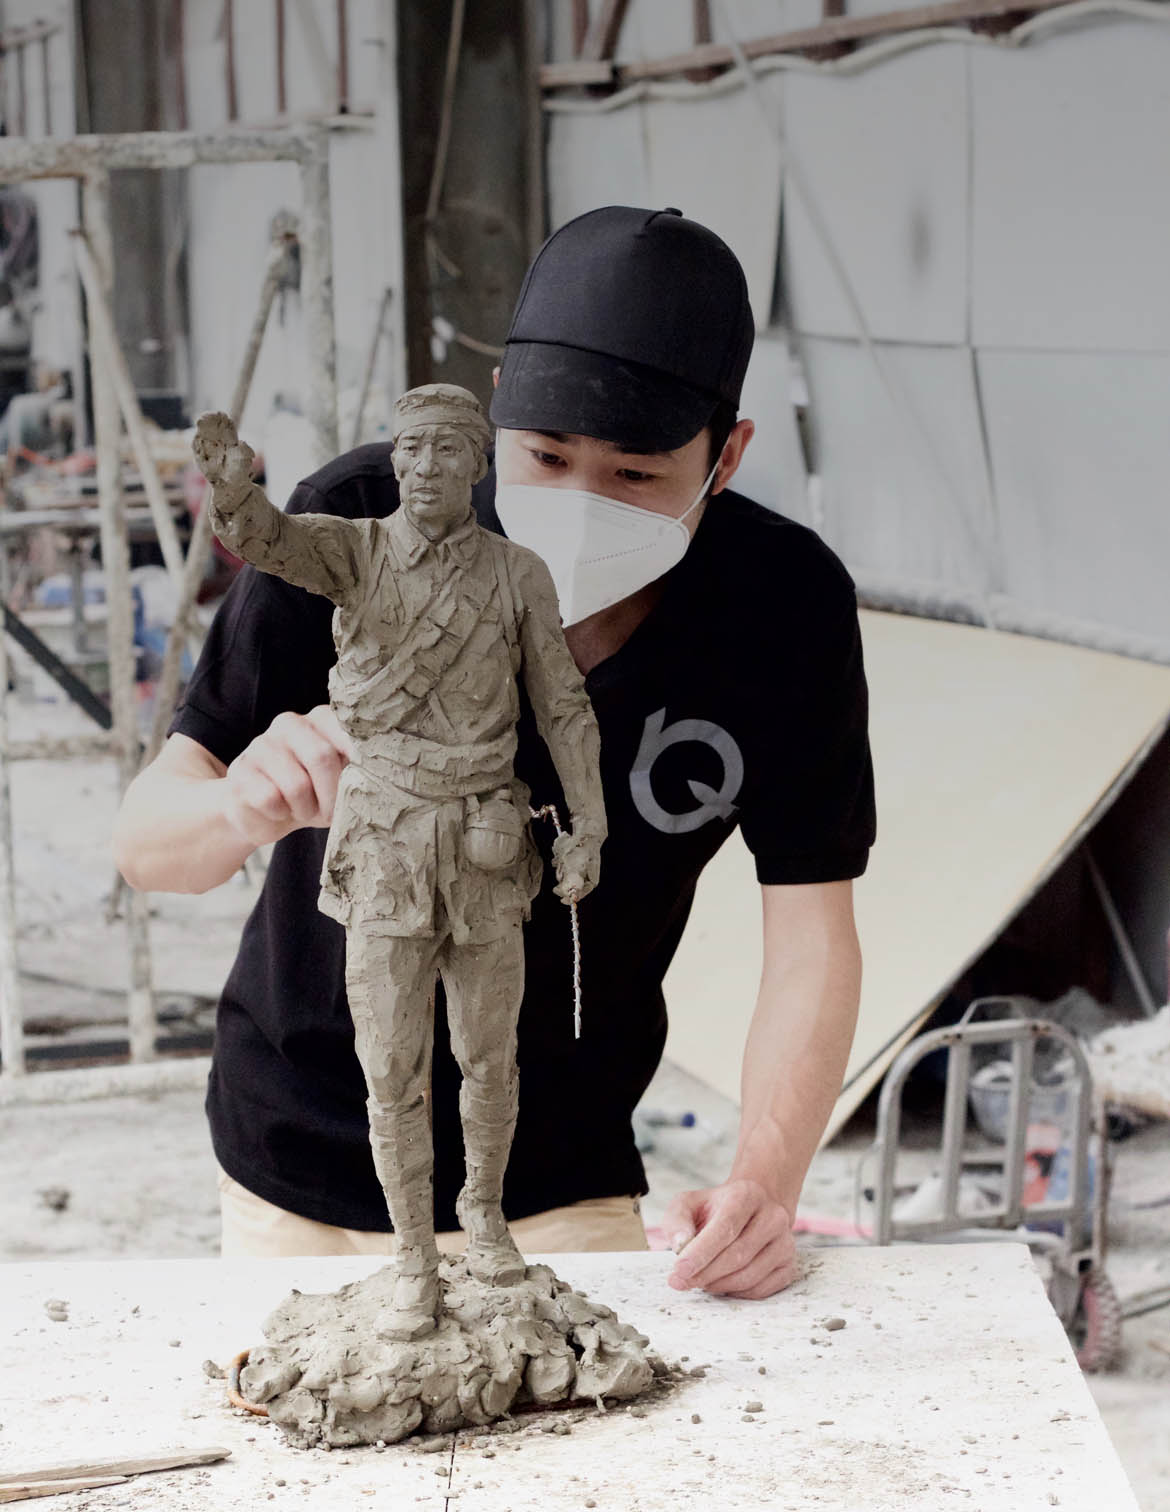 博仟北京雕塑公司泥稿创作人员正在进行泥稿创作